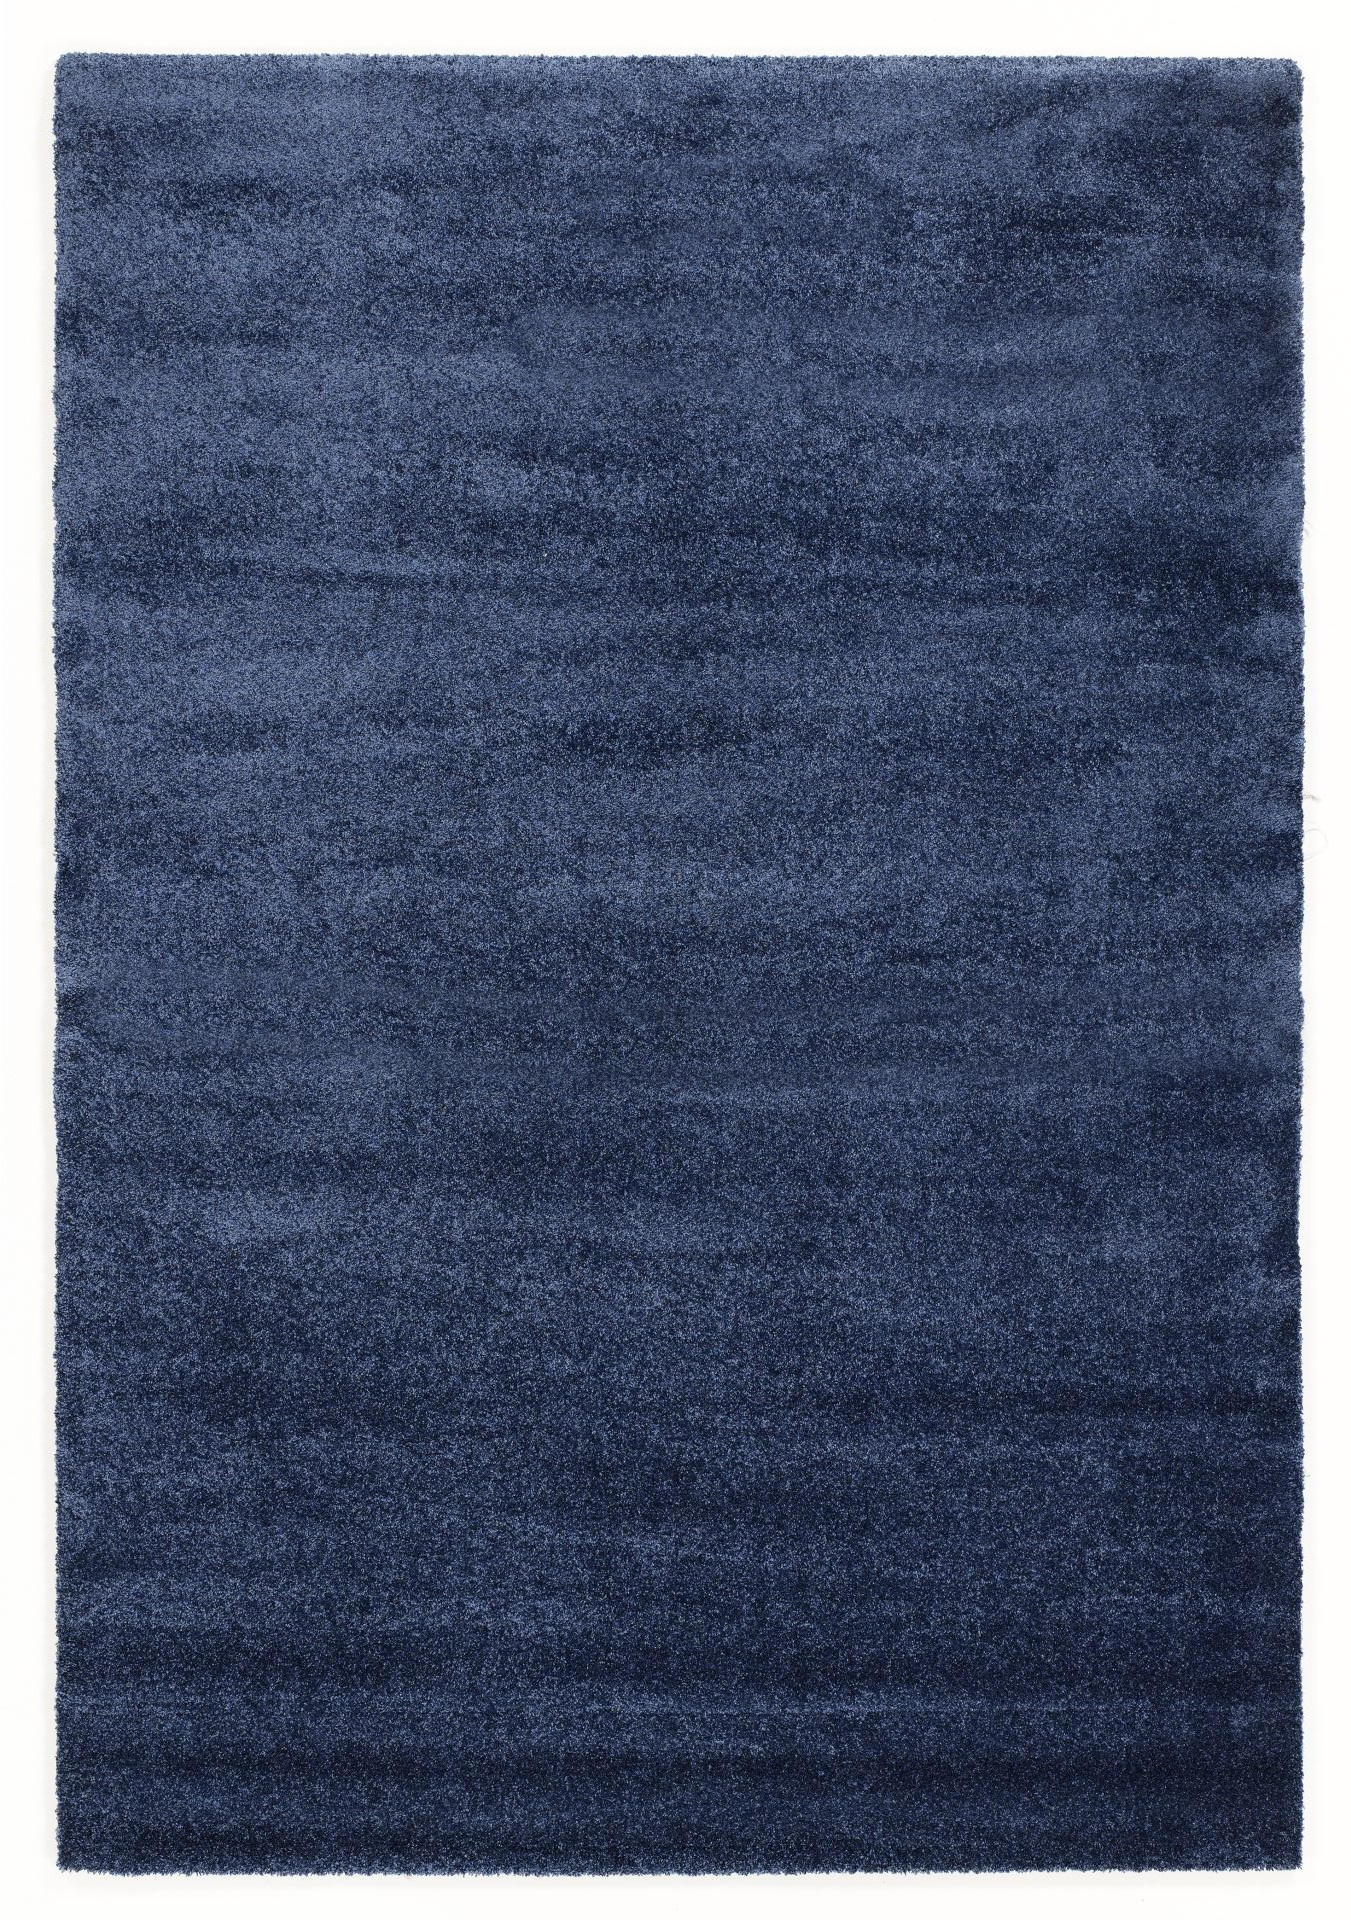 HOCHFLORTEPPICH 240/290 cm Bellevue  - Blau, Basics, Textil (240/290cm) - Novel